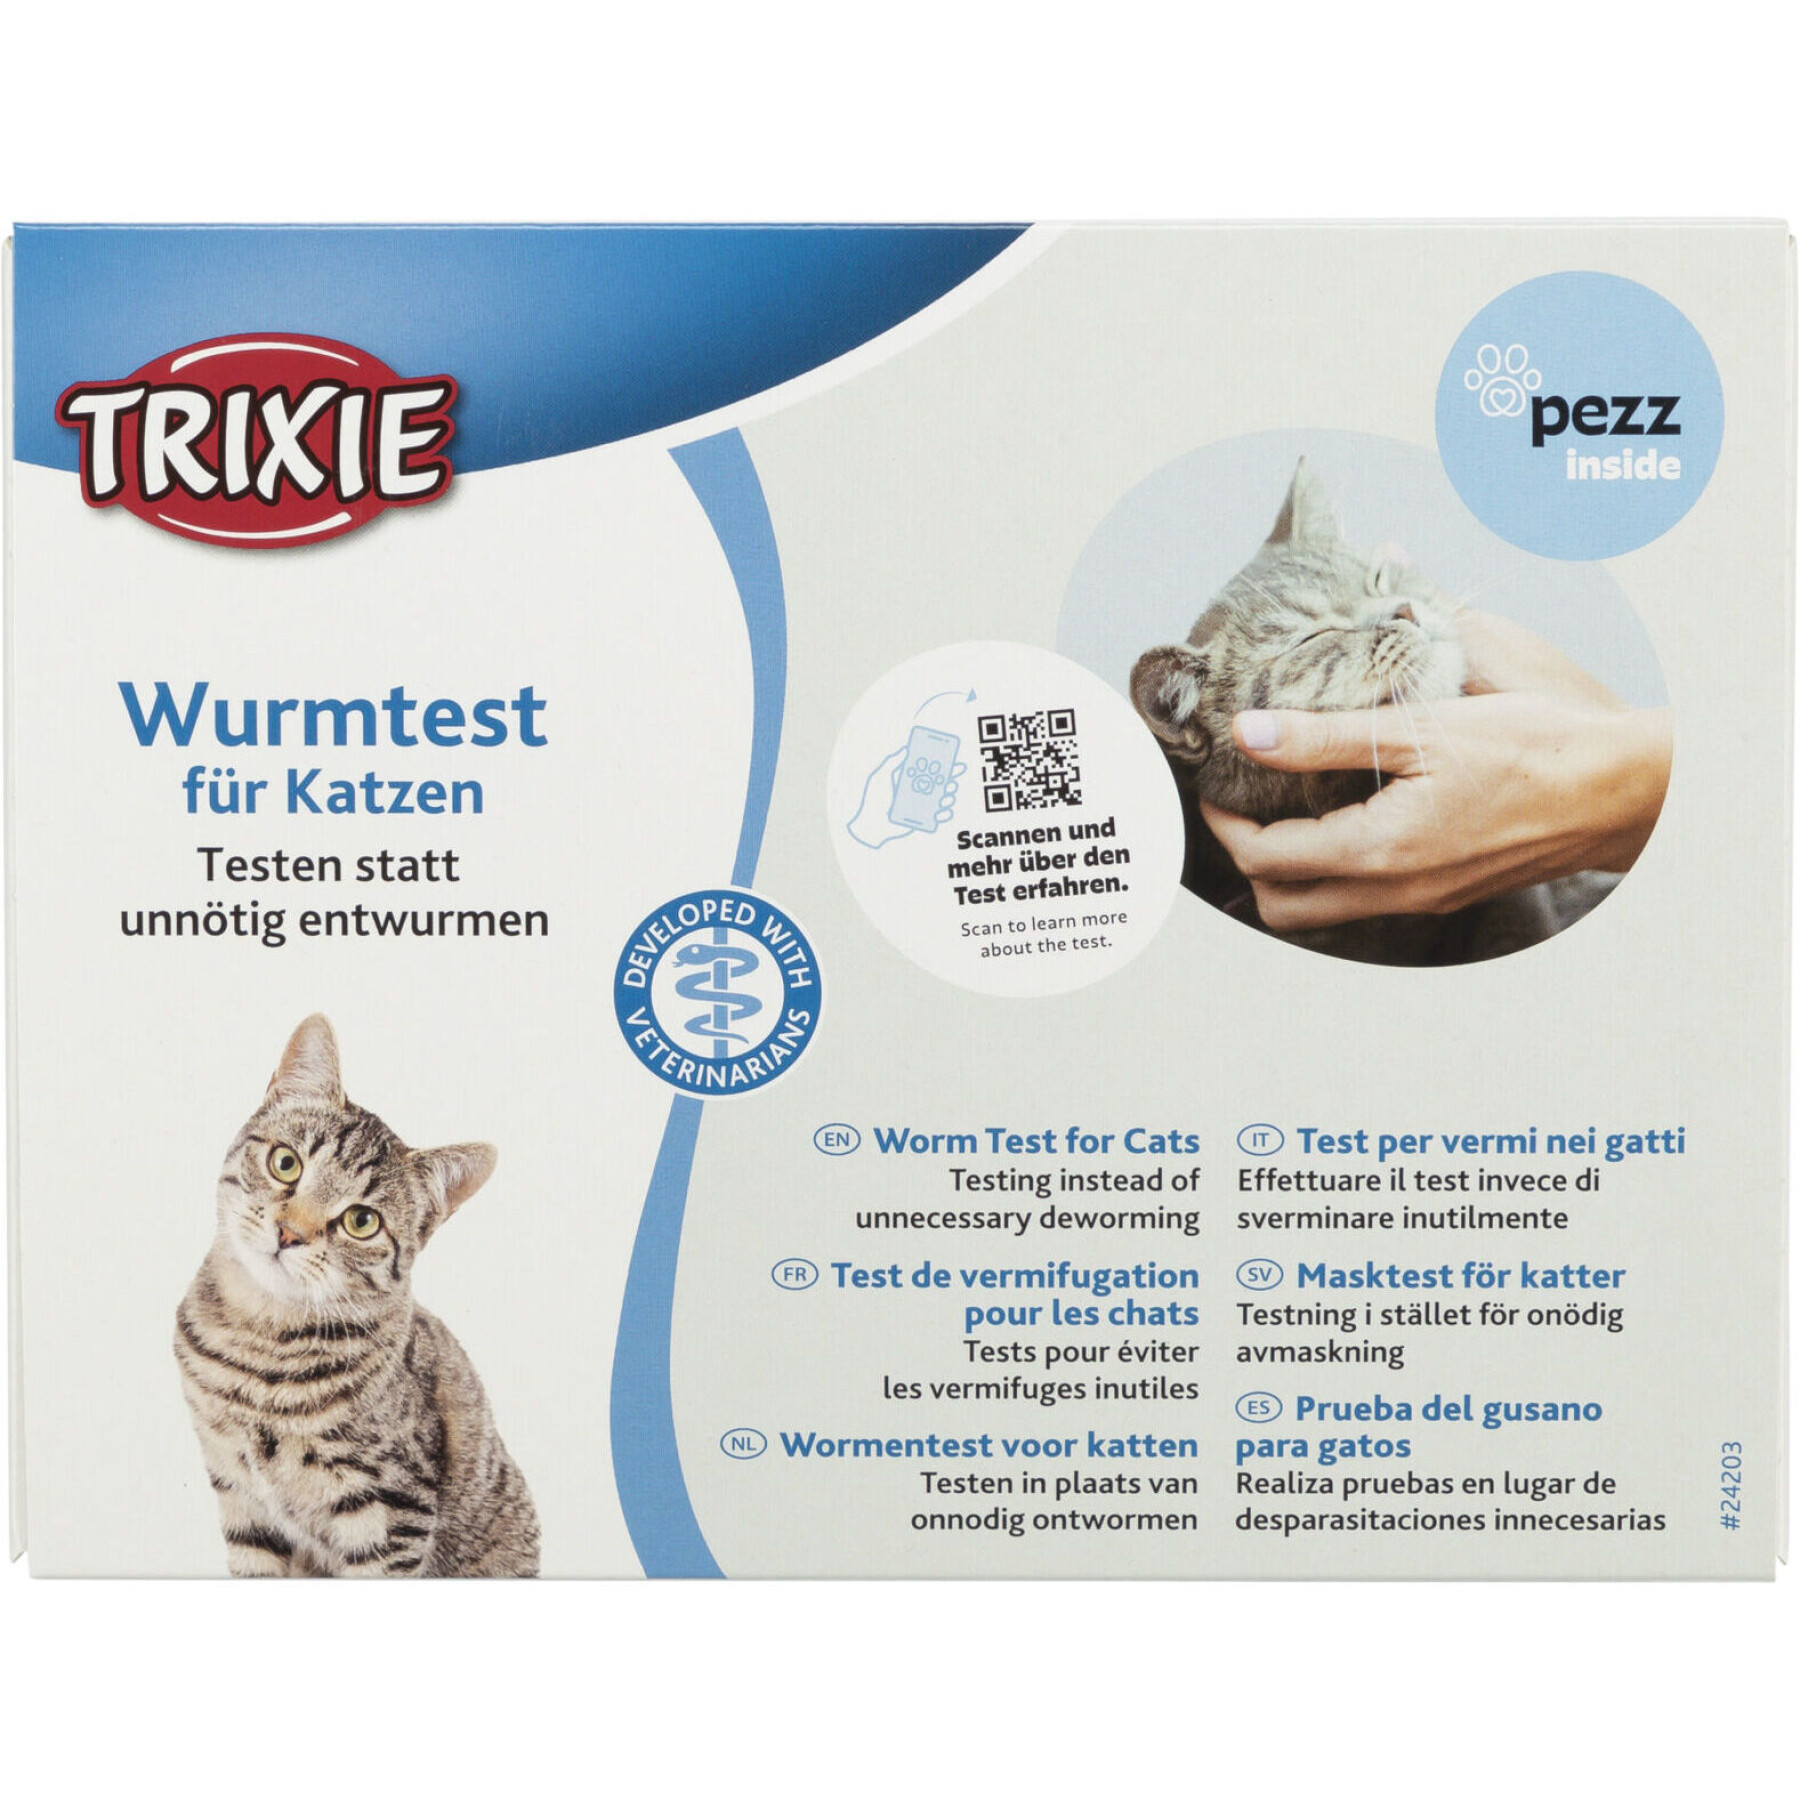 Kattenverzorging ontwormingstest Trixie